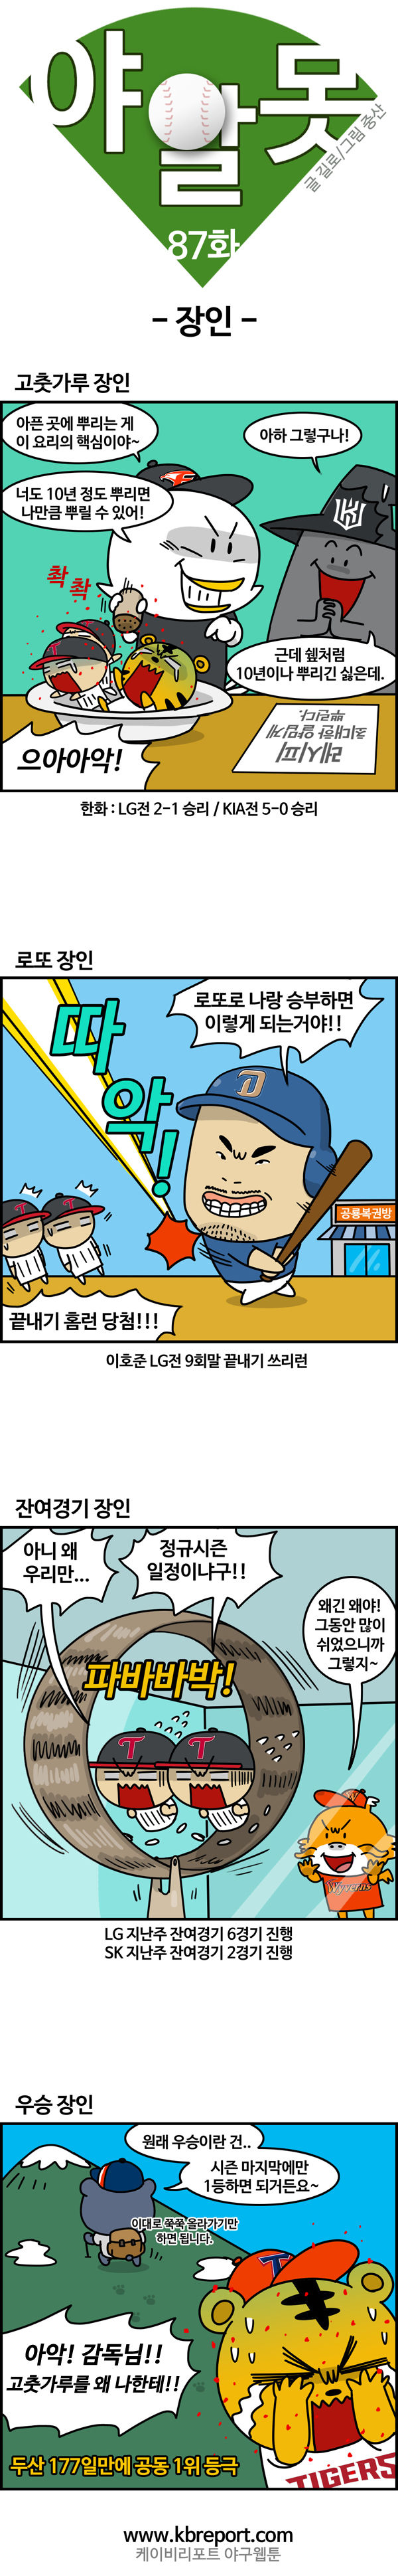 출처: [야구카툰] 야알못: '고추 쉐프' 한화, '우승 달인' 두산